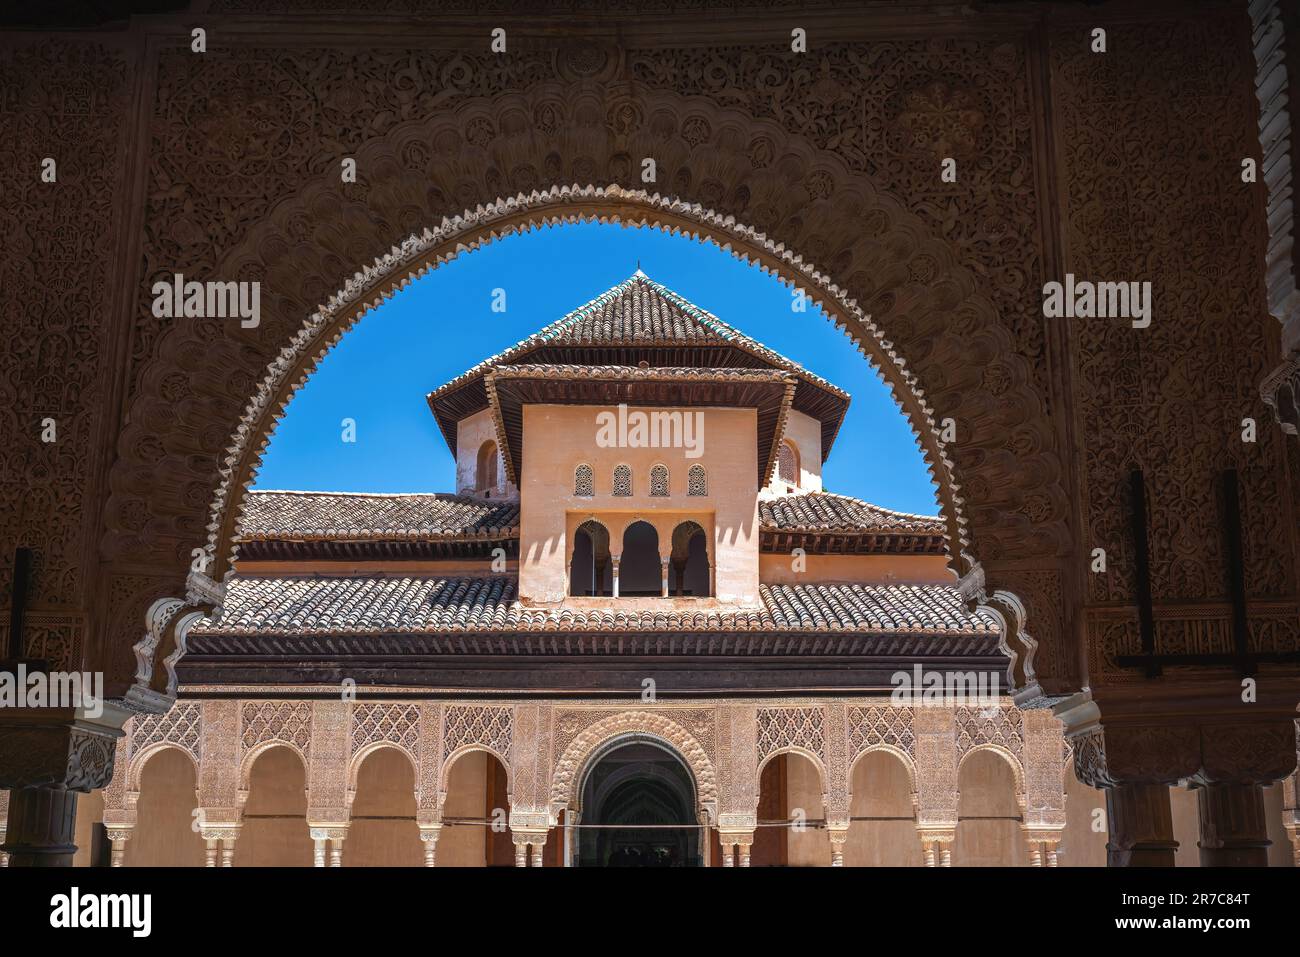 Détail de la Cour des Lions (patio de los Leones) aux palais Nasrides de l'Alhambra - Grenade, Andalousie, Espagne Banque D'Images